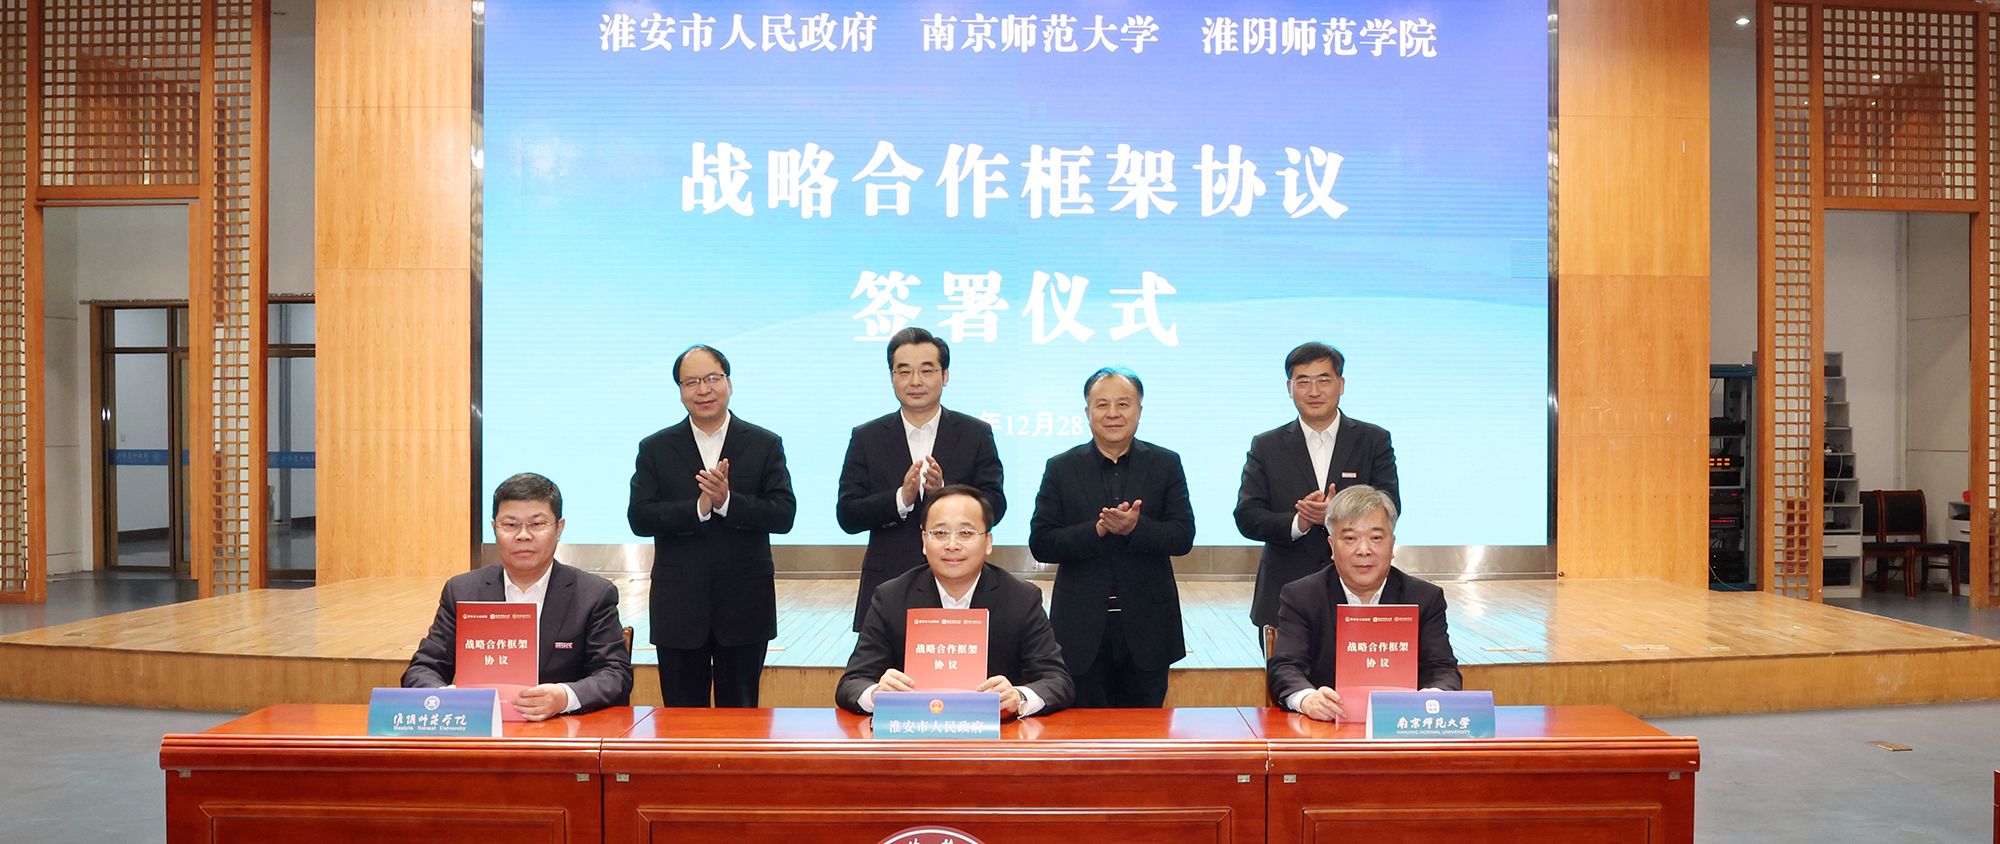 淮阴师范学院与淮安市人民政府、南京师范大学签署战略合作框架协议